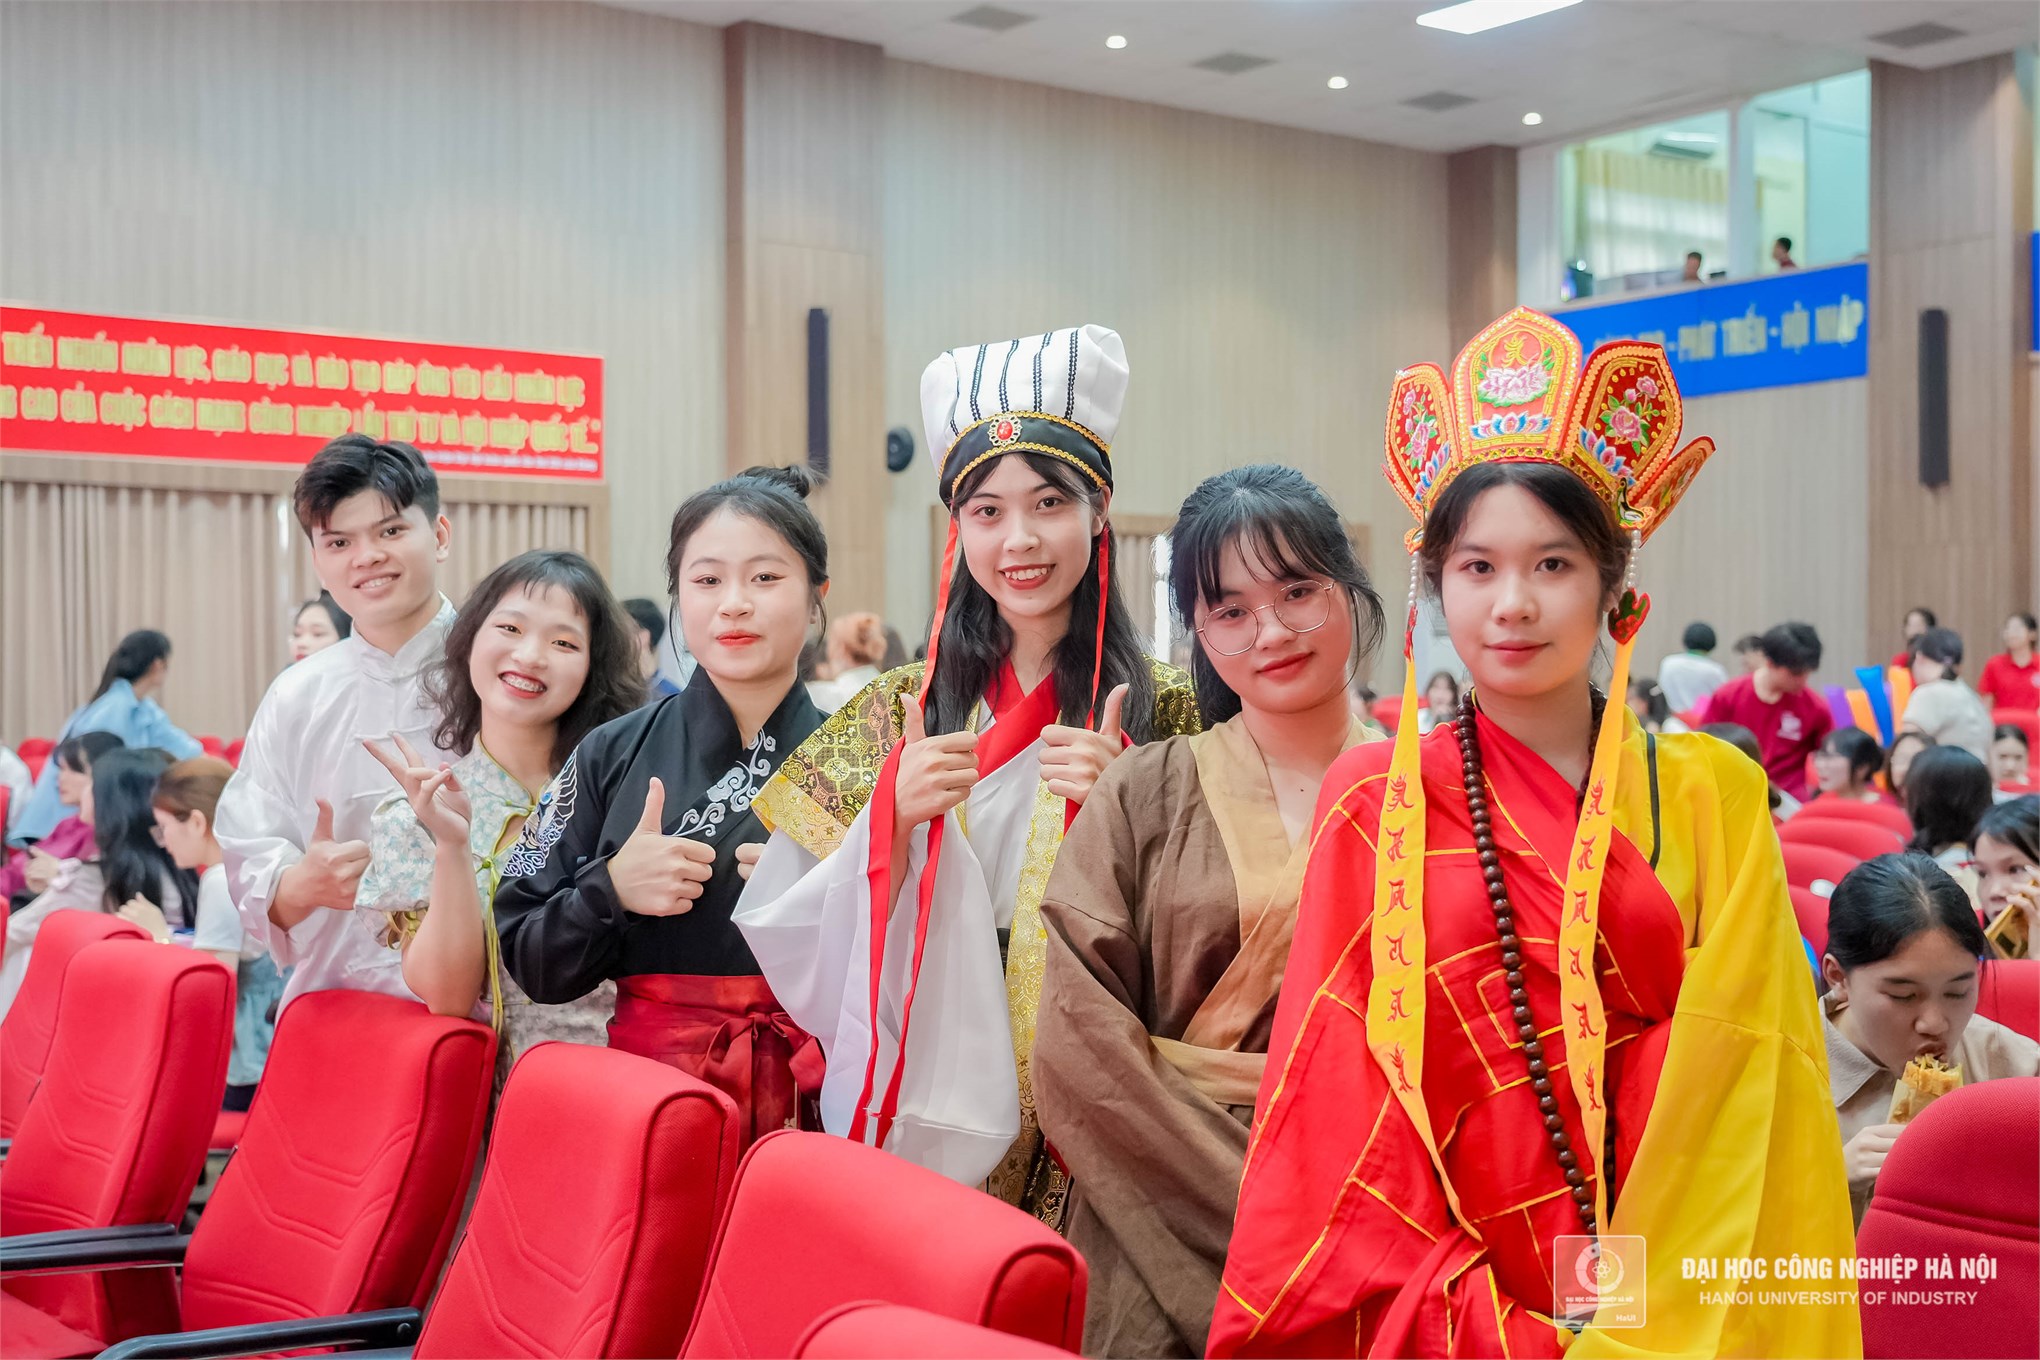 Sinh viên Trường Ngoại ngữ - Du lịch đạt Giải Nhì cuộc thi Tài năng Hàn Ngữ năm 2024